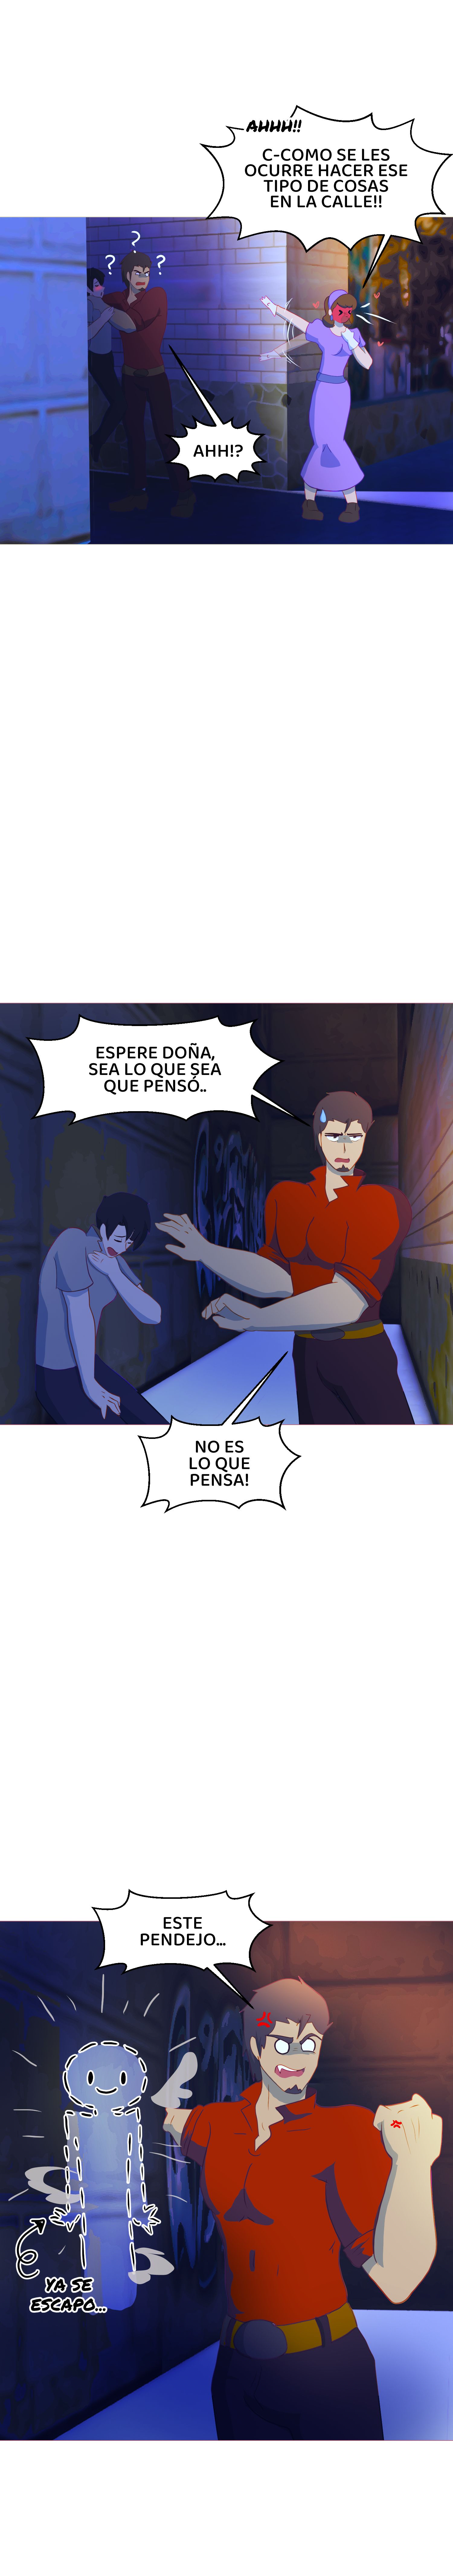 webtoon español premium apk